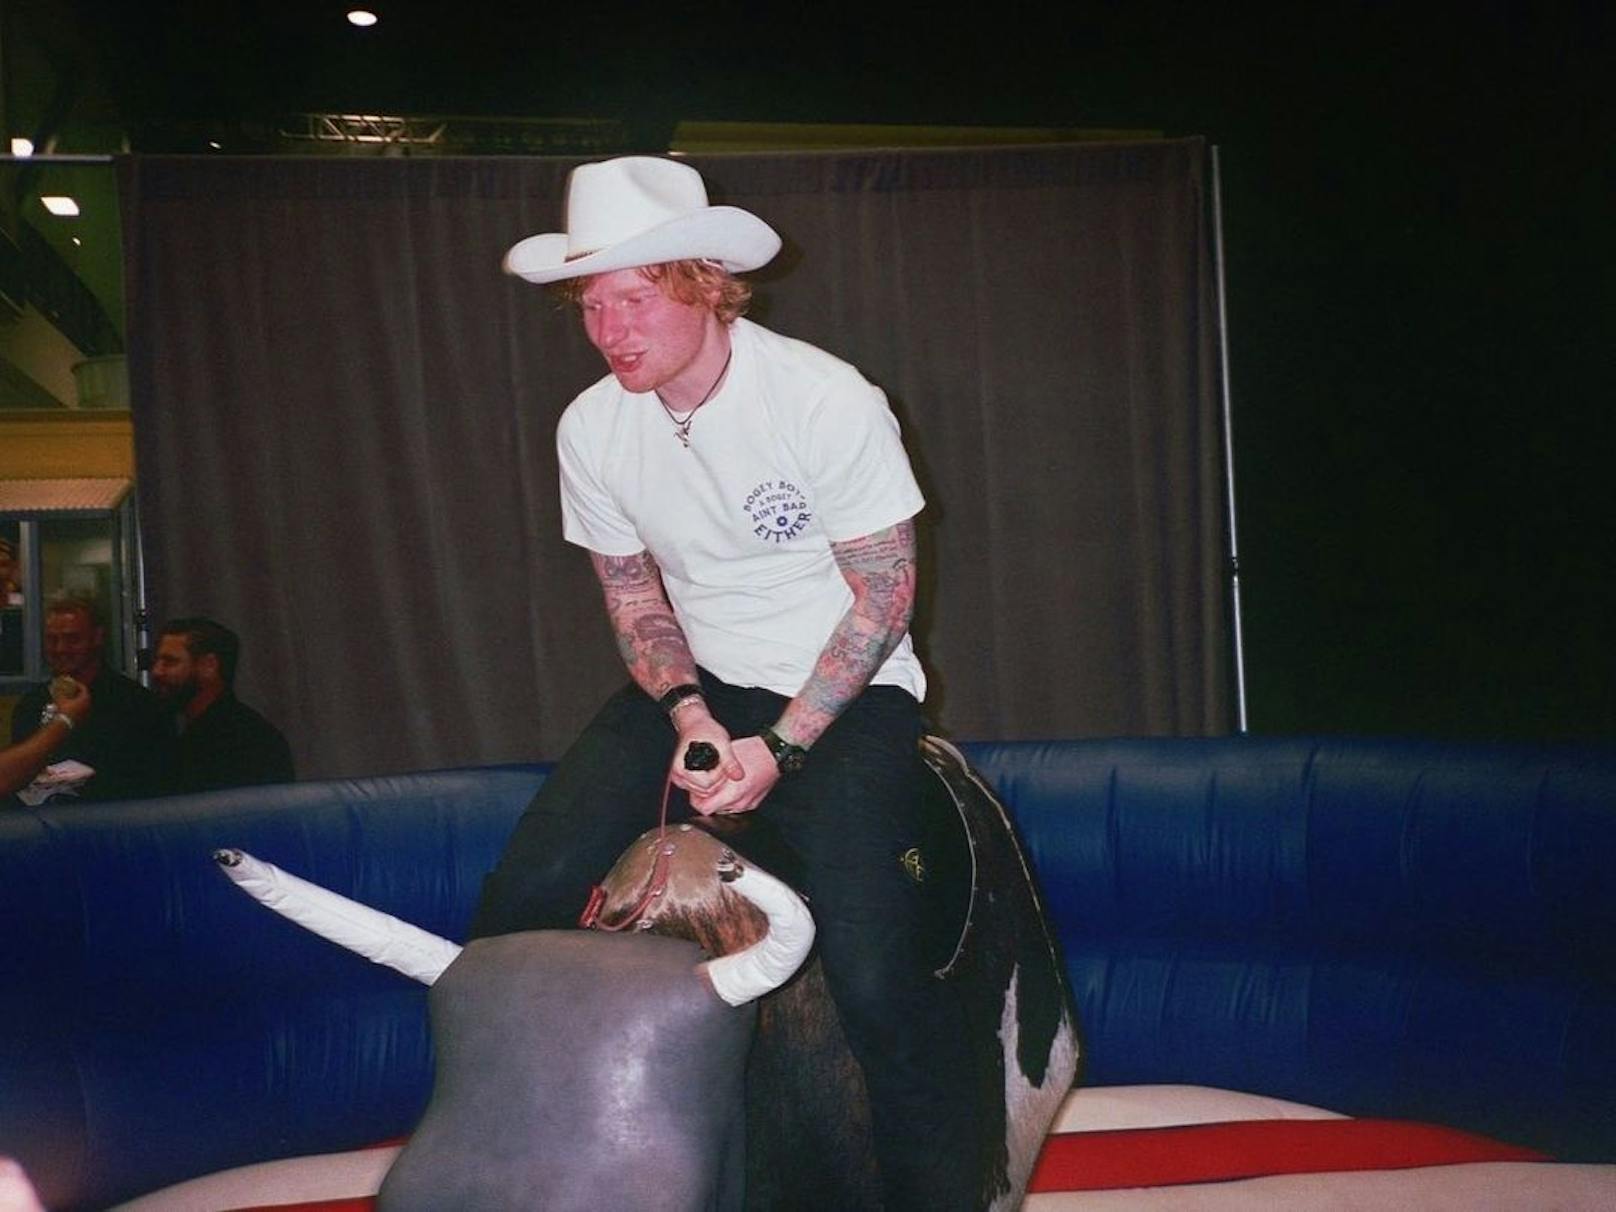 Ed Sheeran versucht sich im "Bull-Riding", ob ihm der Cowboyhut dabei hilft? Cool sieht es zumindest aus!